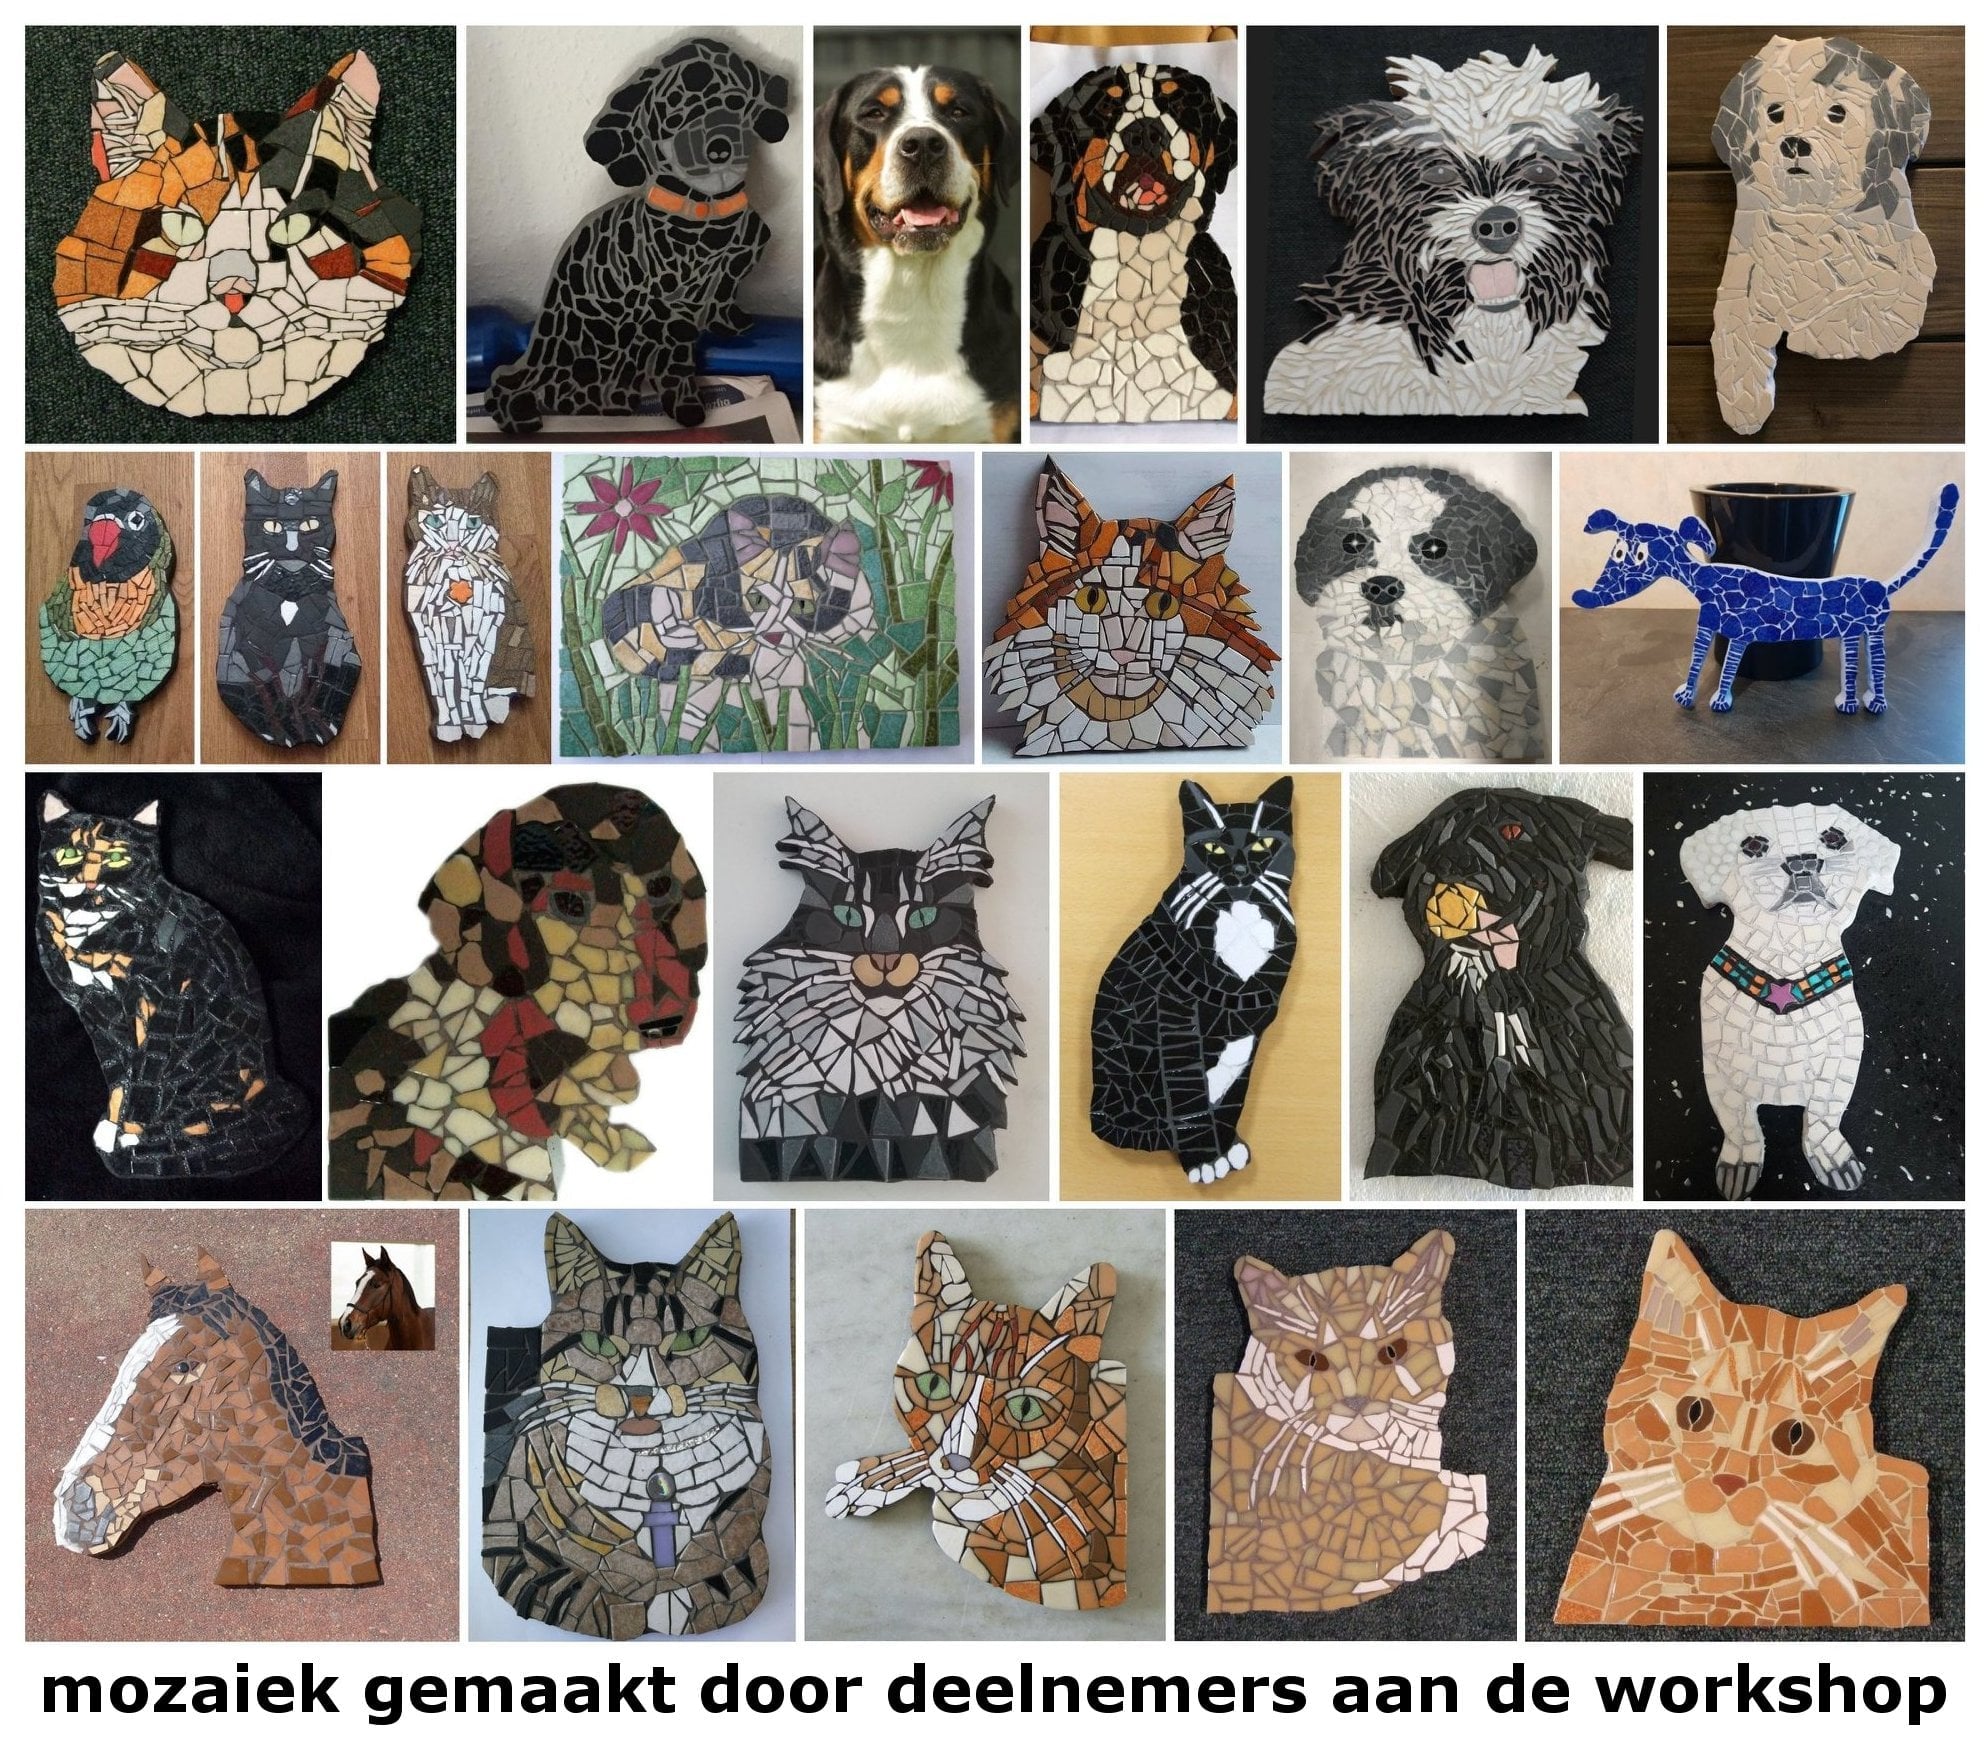 Mozaiekdieren gemaakt door deelnemers aan de workshop dierenmozaiek.